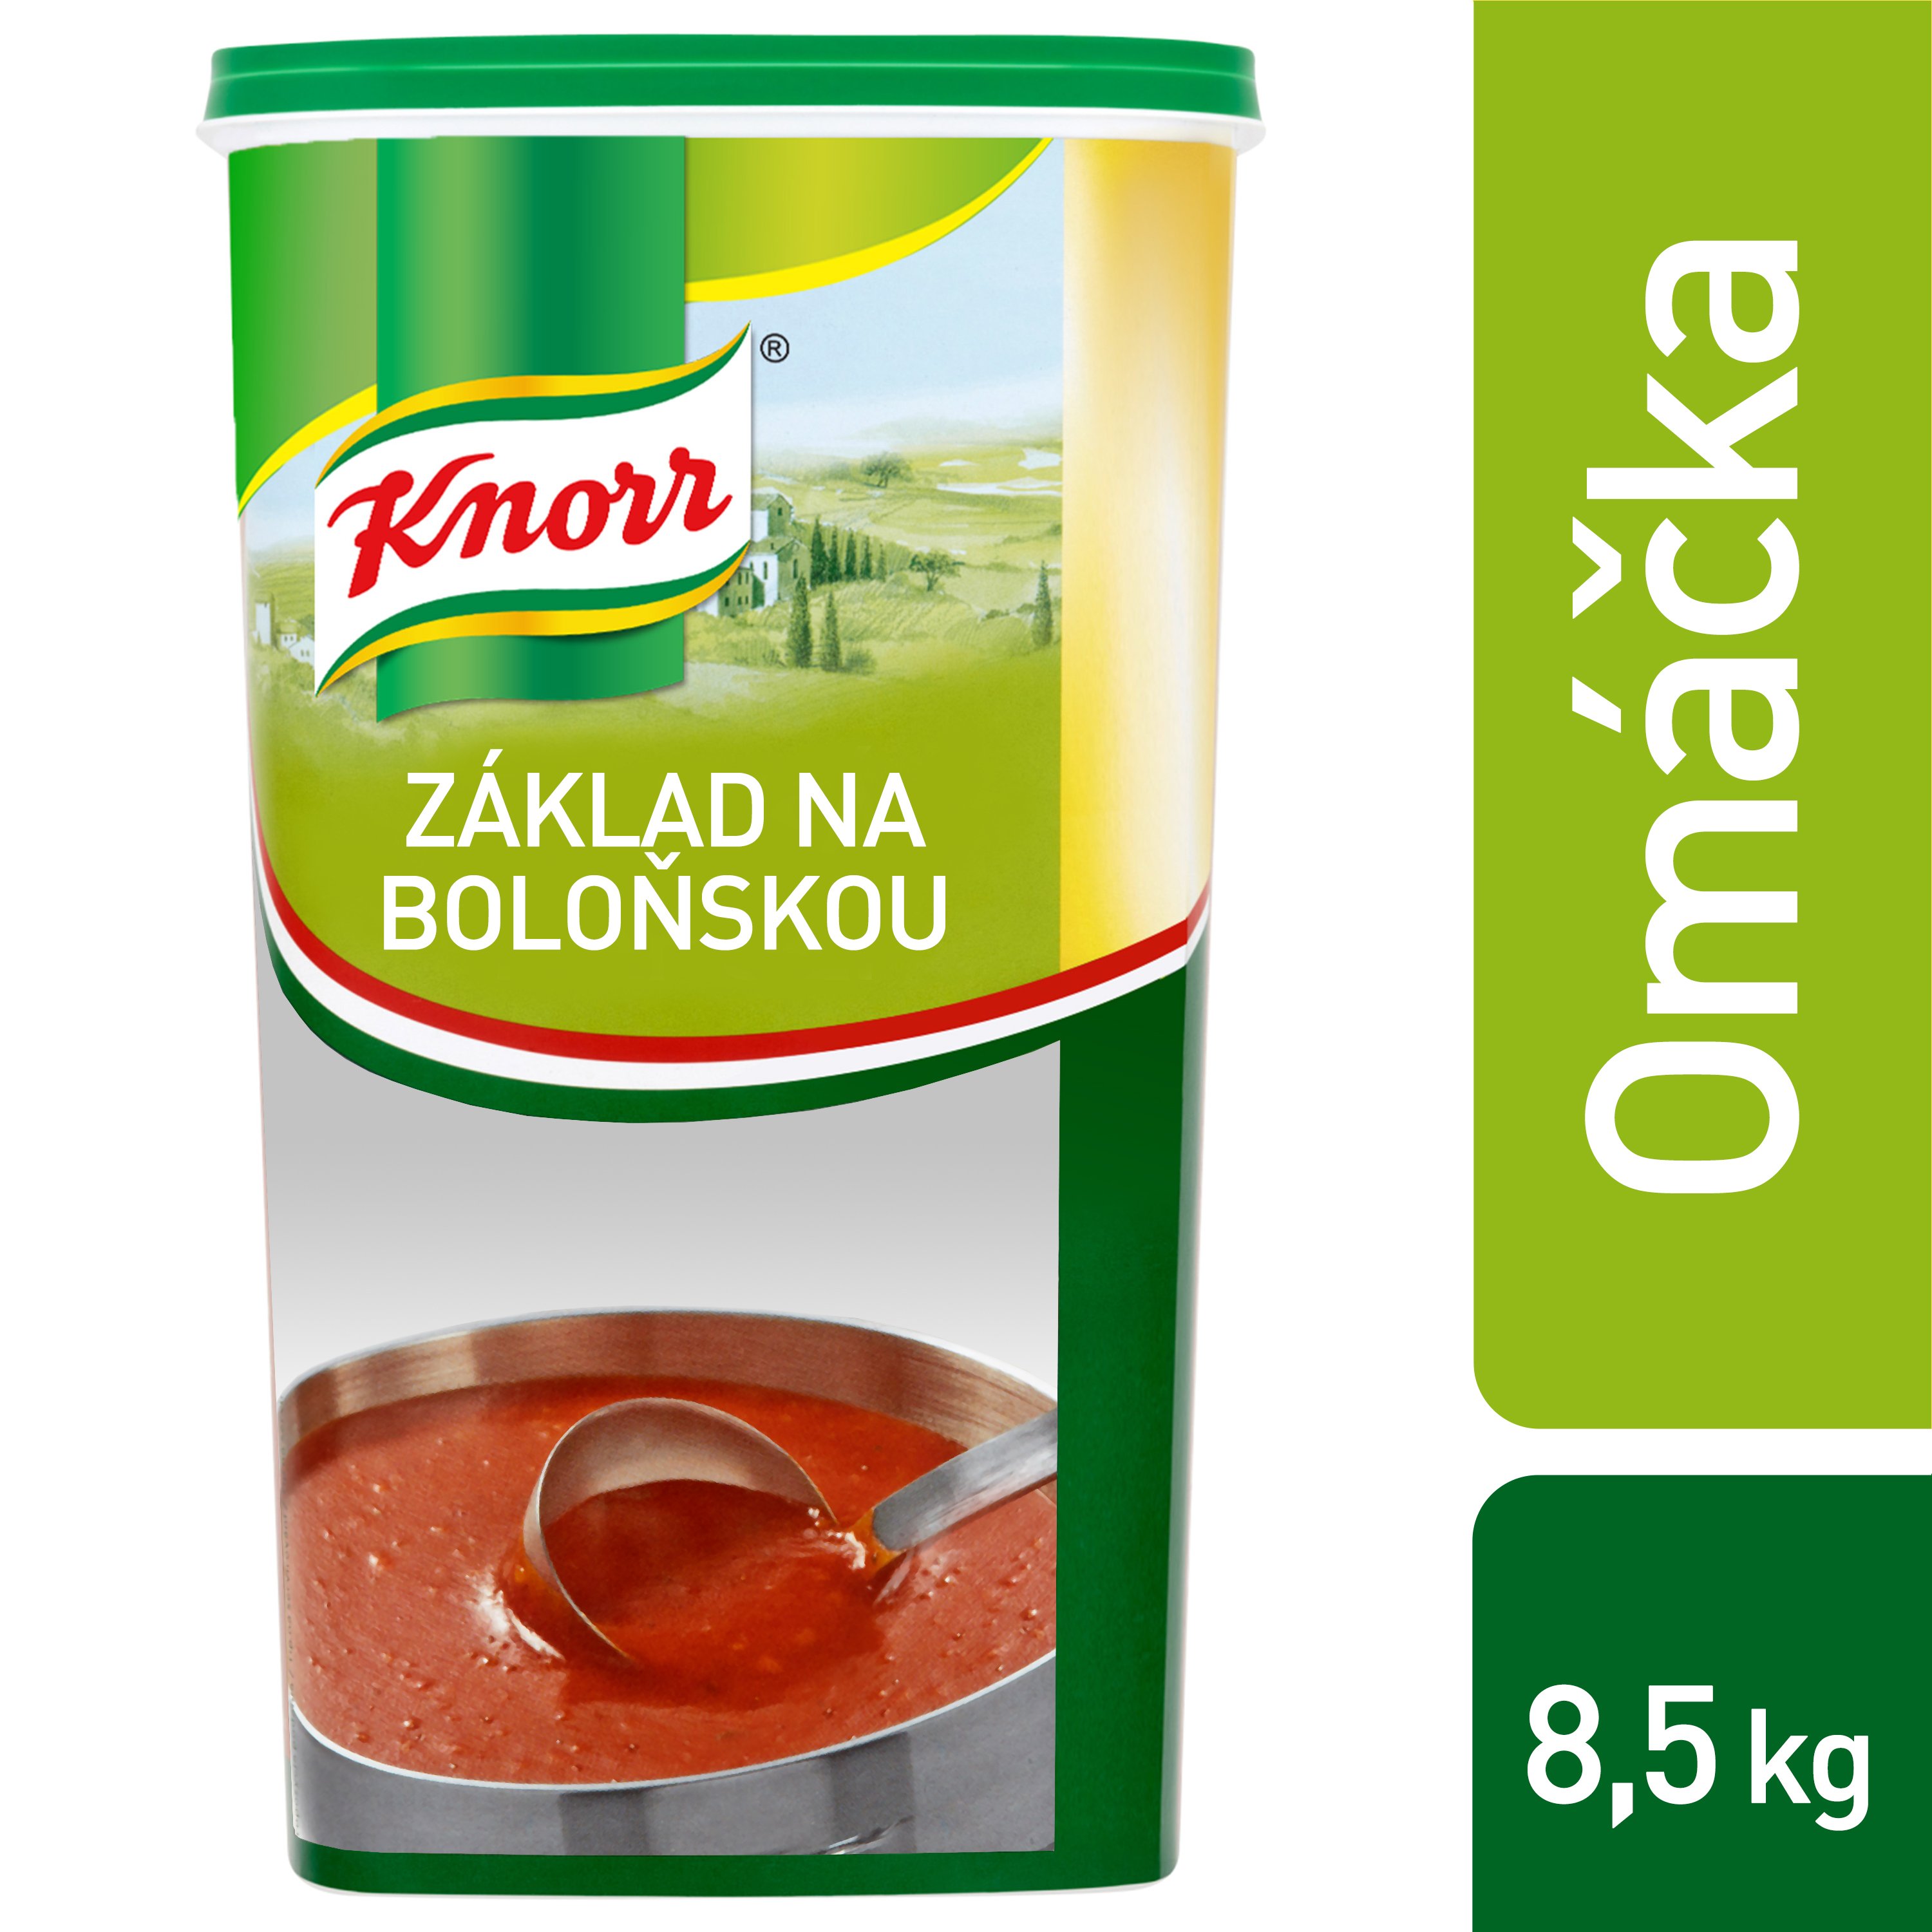 Knorr Základ pro boloňskou omáčku 1kg - 